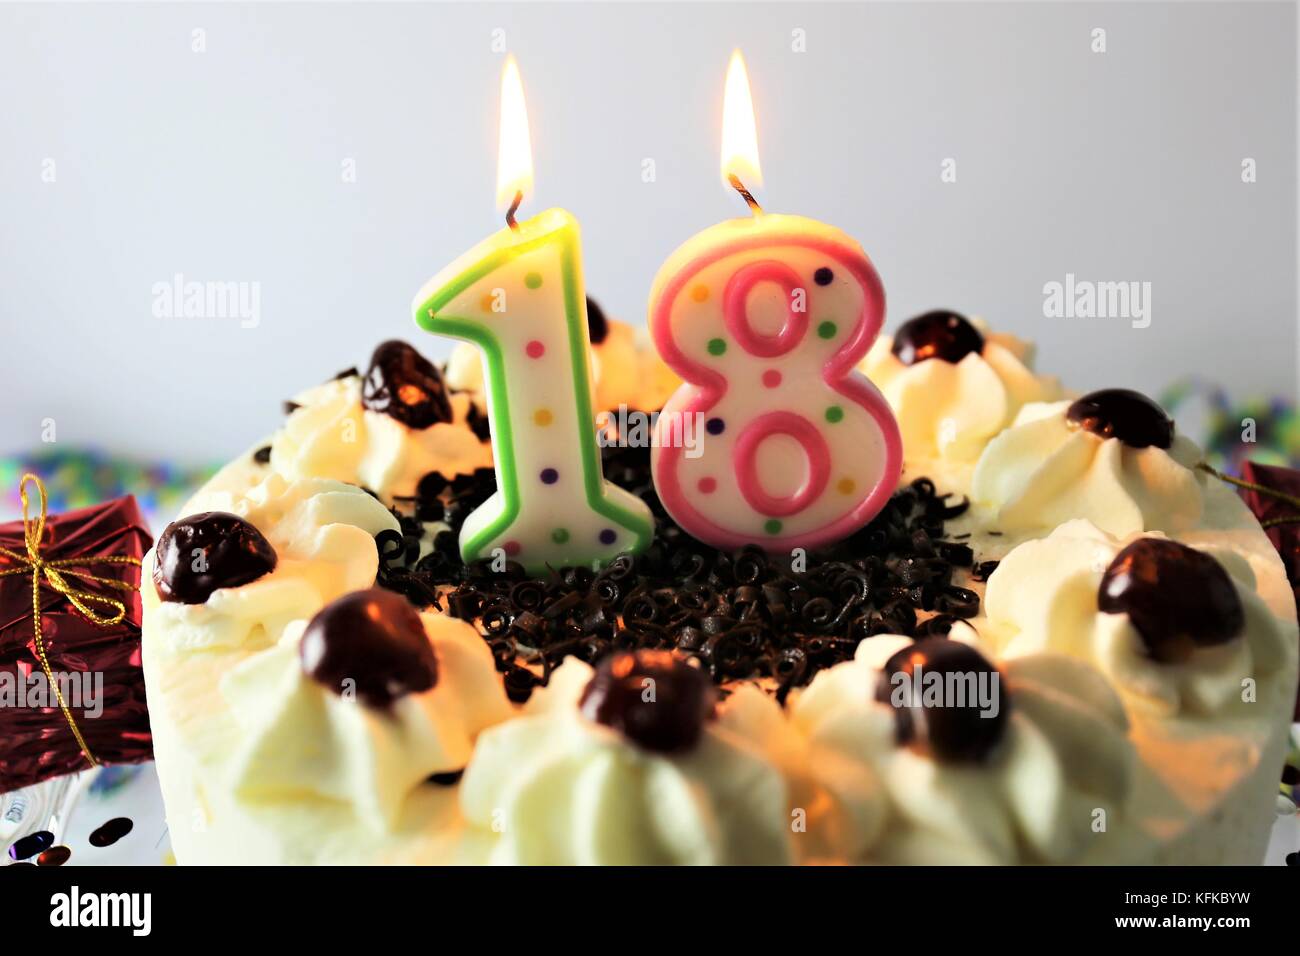 El juego de decoraciones para tartas de cumpleaños de 18 años incluye velas  de cumpleaños número 18 y adornos para tartas de feliz cumpleaños de 18